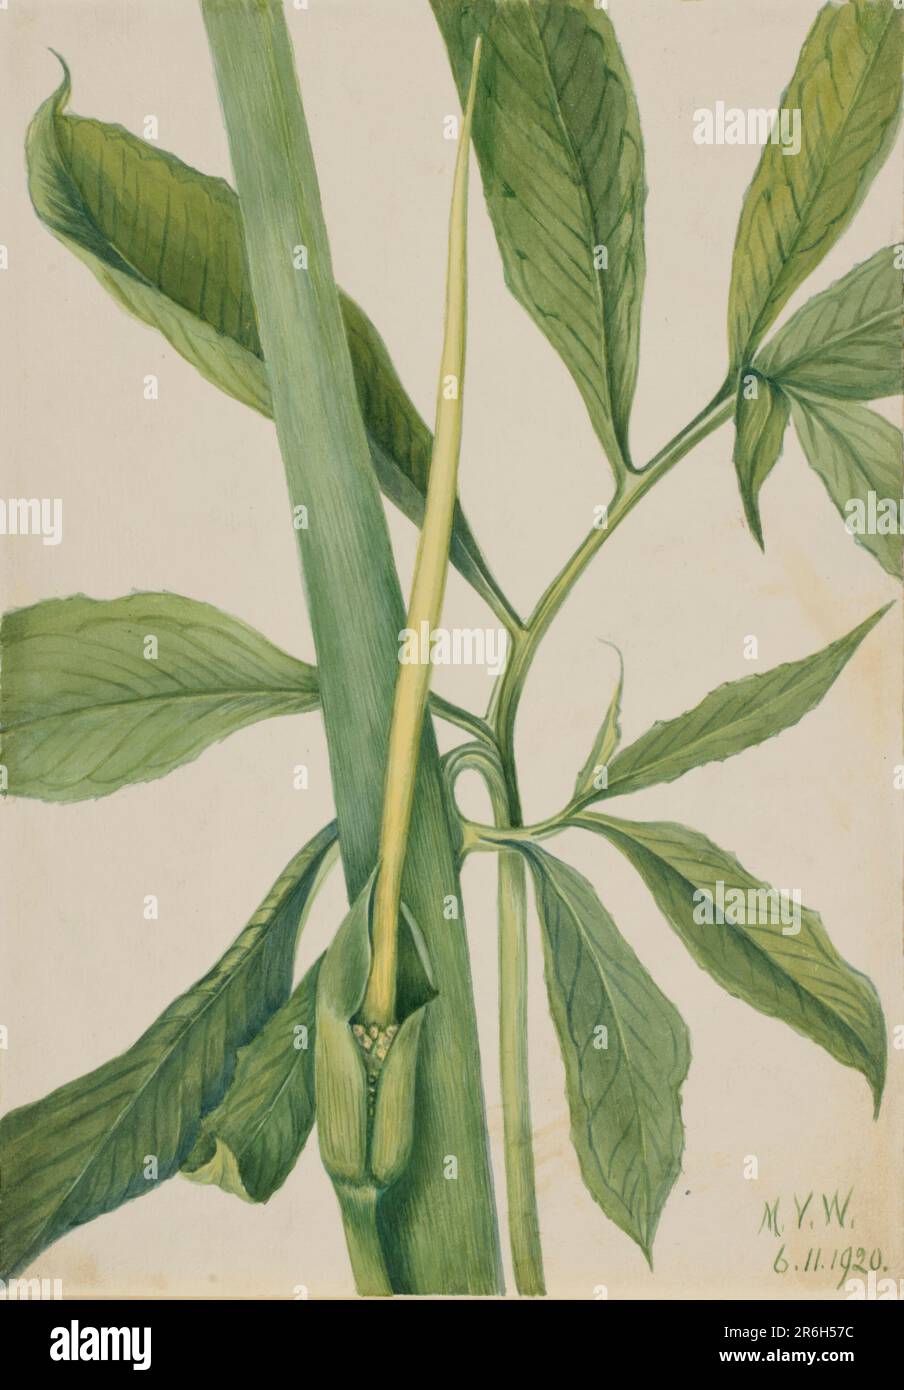 Greendragon (Arisaema dracontium). Date: 1920. Watercolor on paper. Museum: Smithsonian American Art Museum. Stock Photo